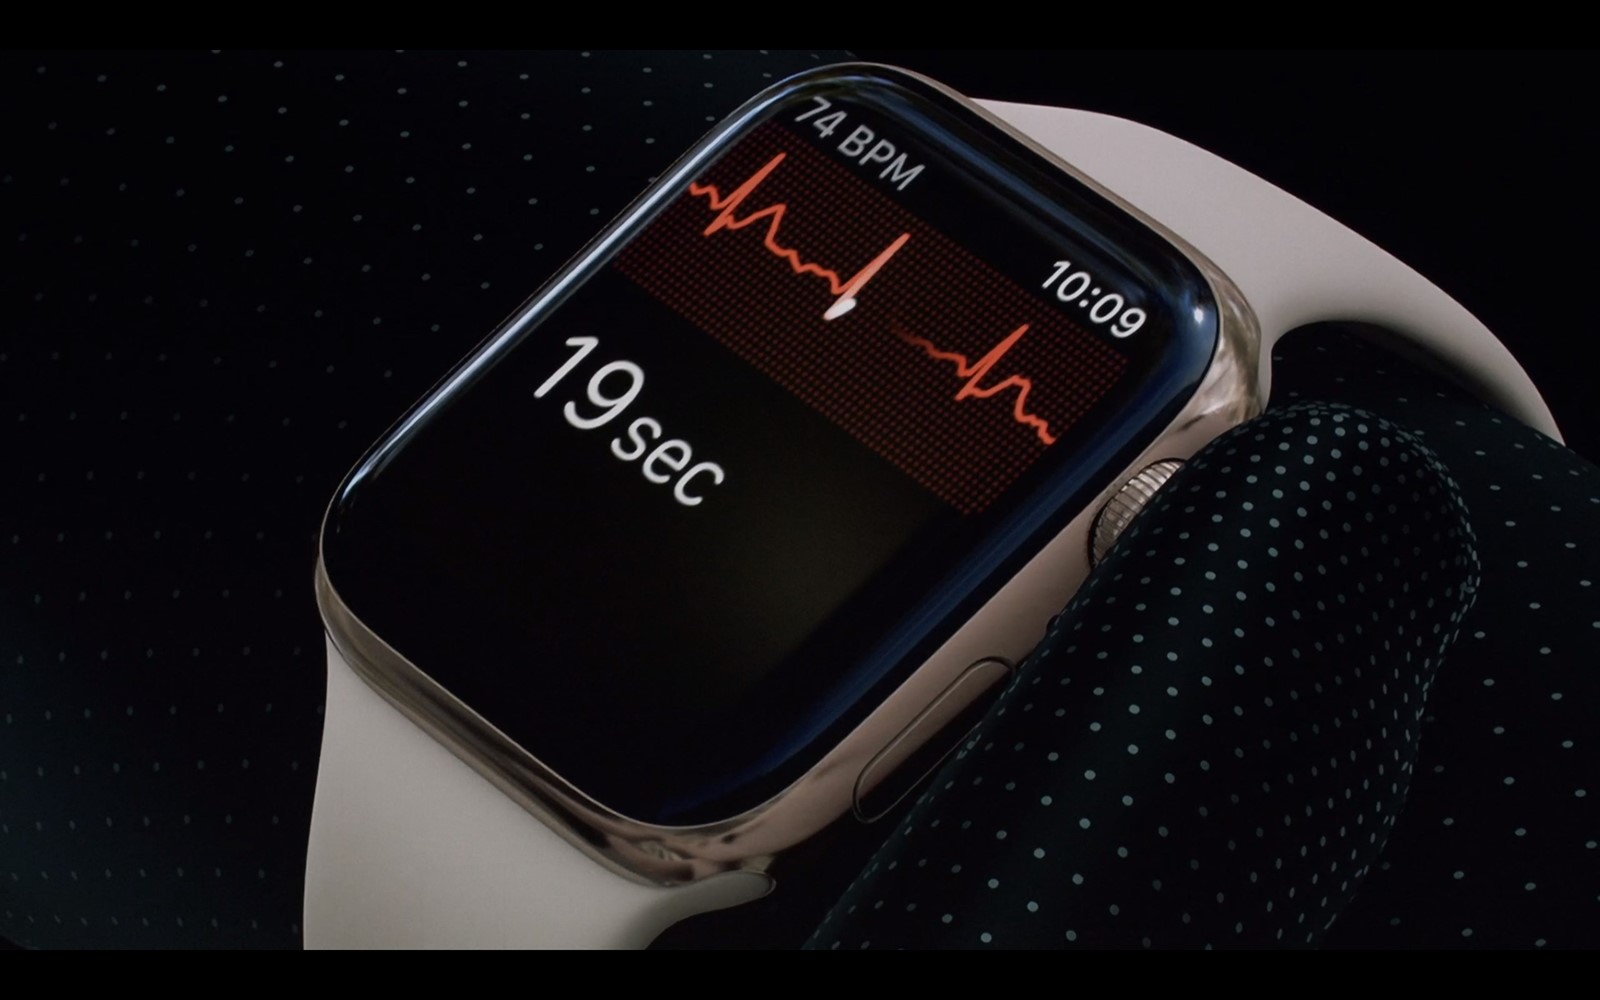 Liječnik pojasnio EKG funkciju novog Apple Watcha - Pametni satovi @ Bug.hr